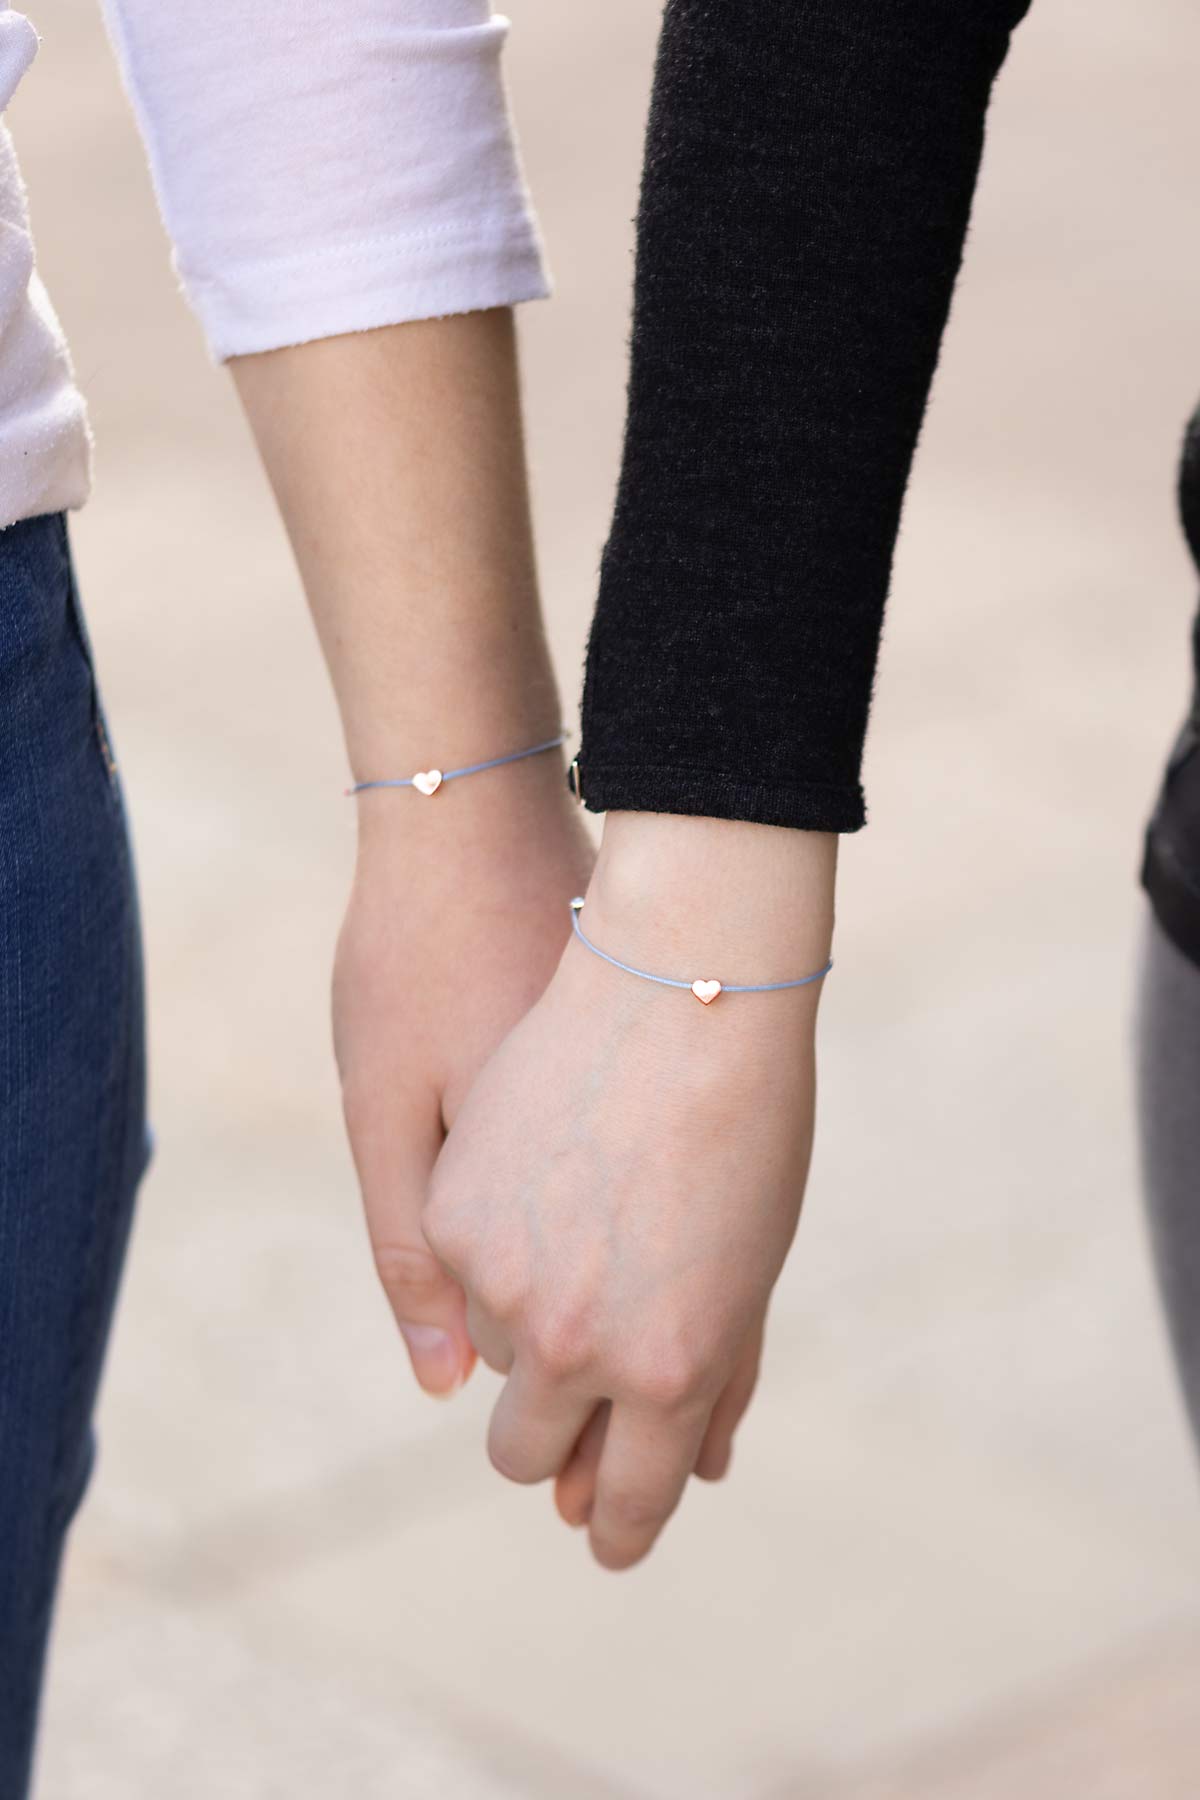 Freundinnen halten Hände und präsentieren Armbänder mit Herz Symbol